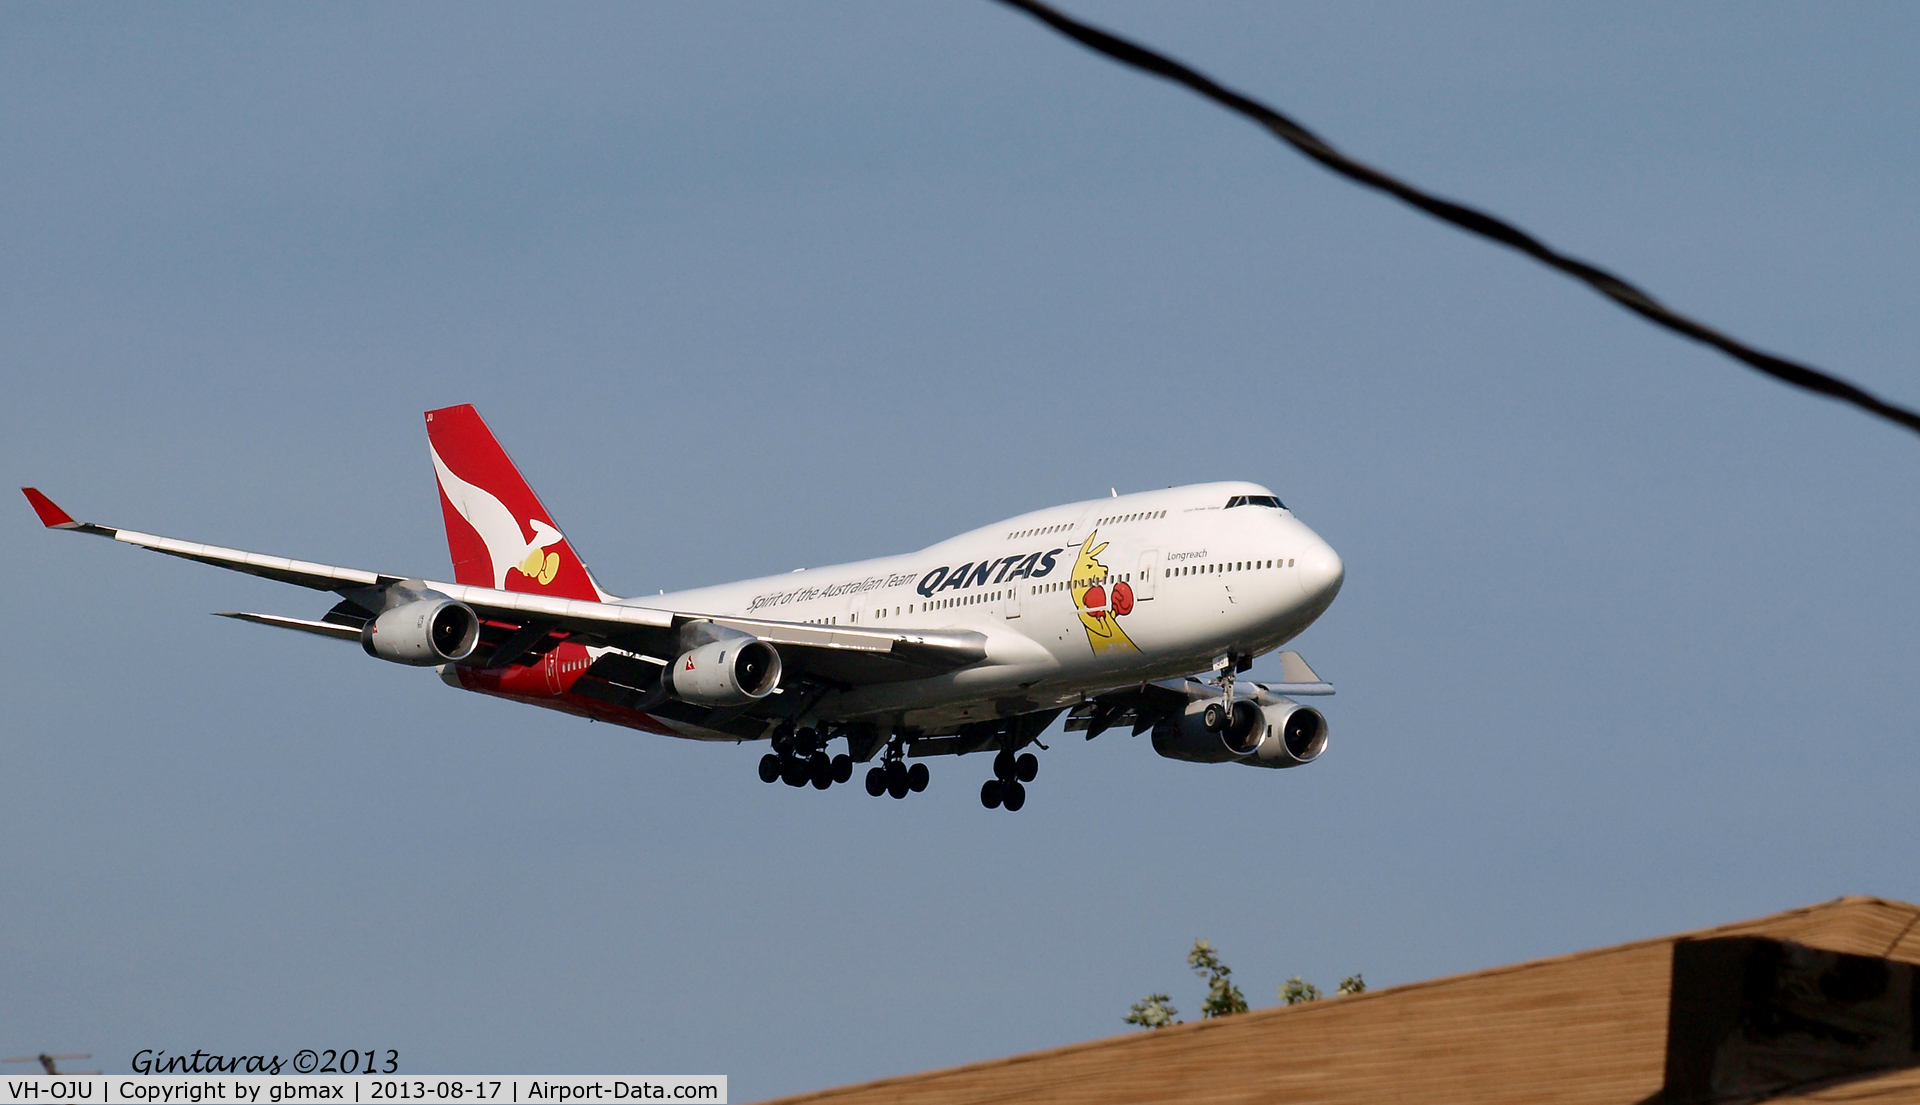 VH-OJU, 1999 Boeing 747-438 C/N 25566, Seconds before landing on L22, JFK, Qantas 